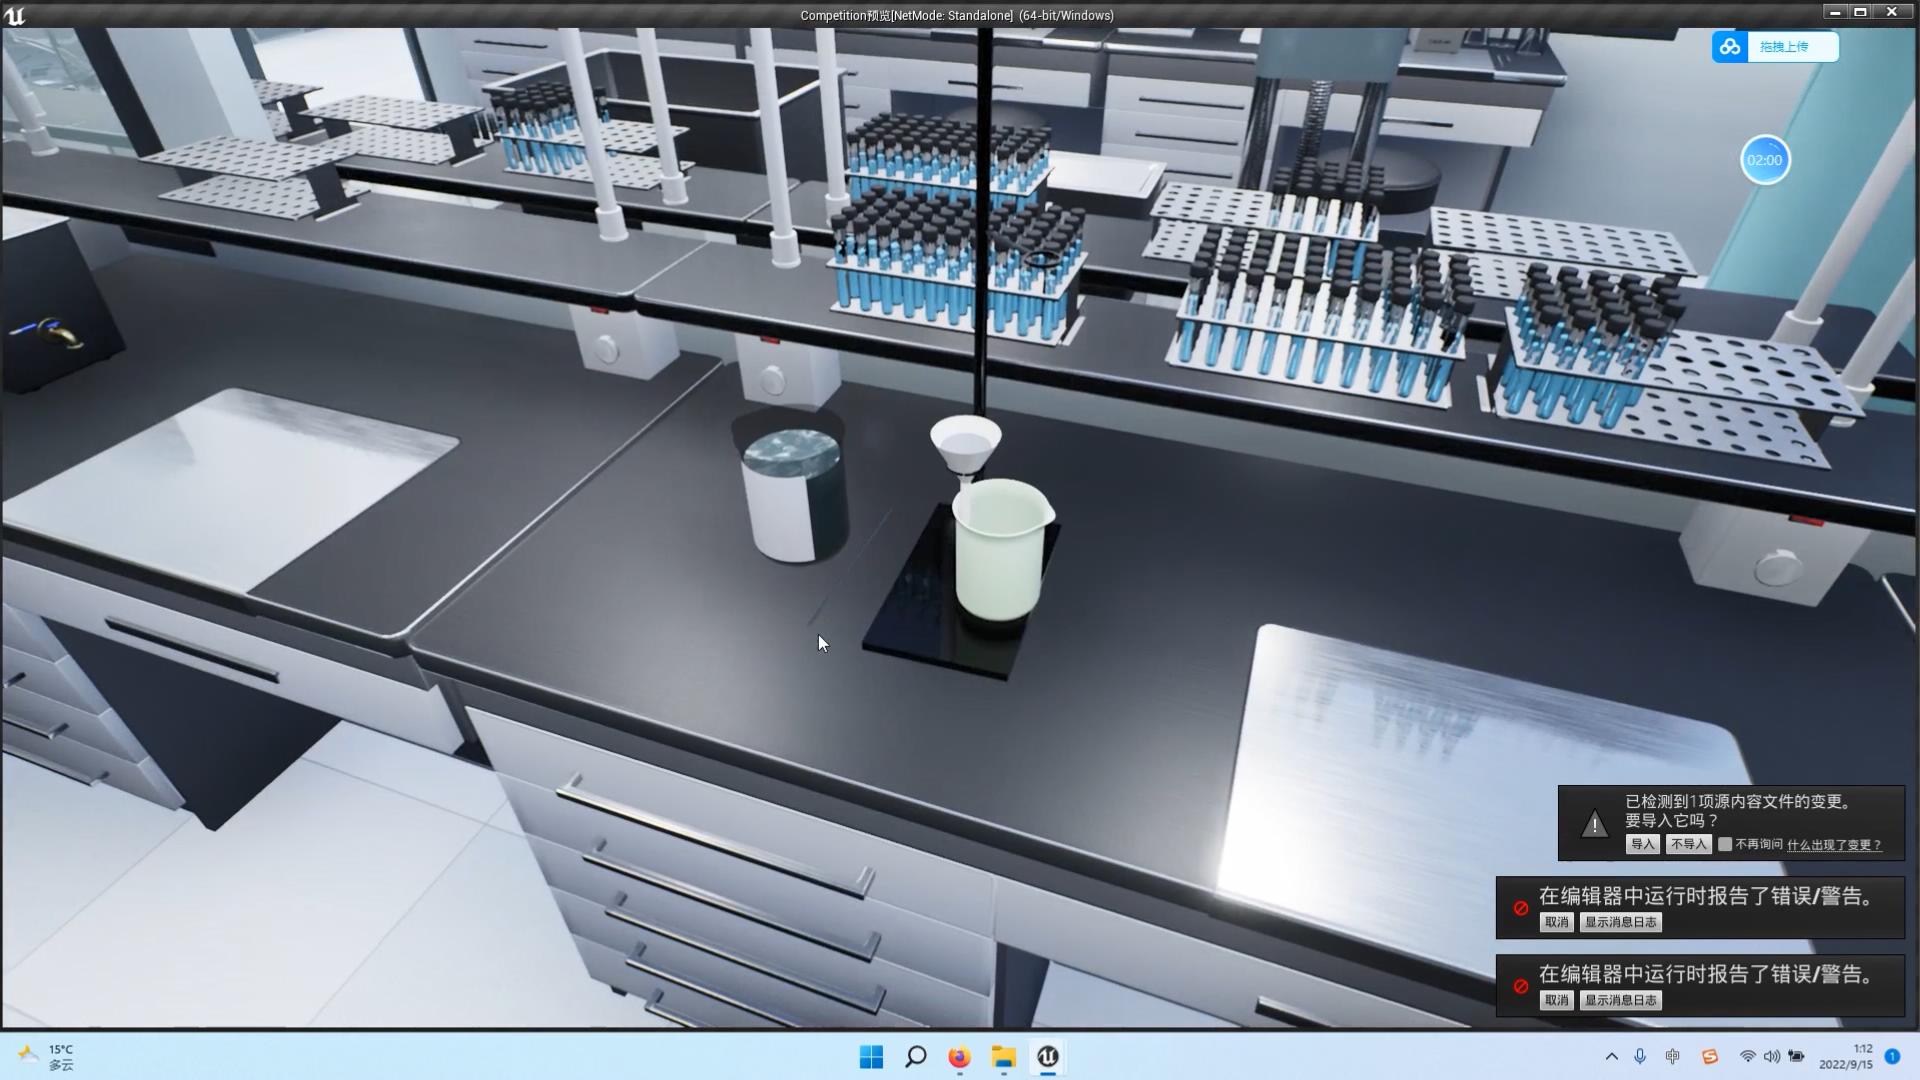 虚幻作品竞赛作品——虚拟化学实验室